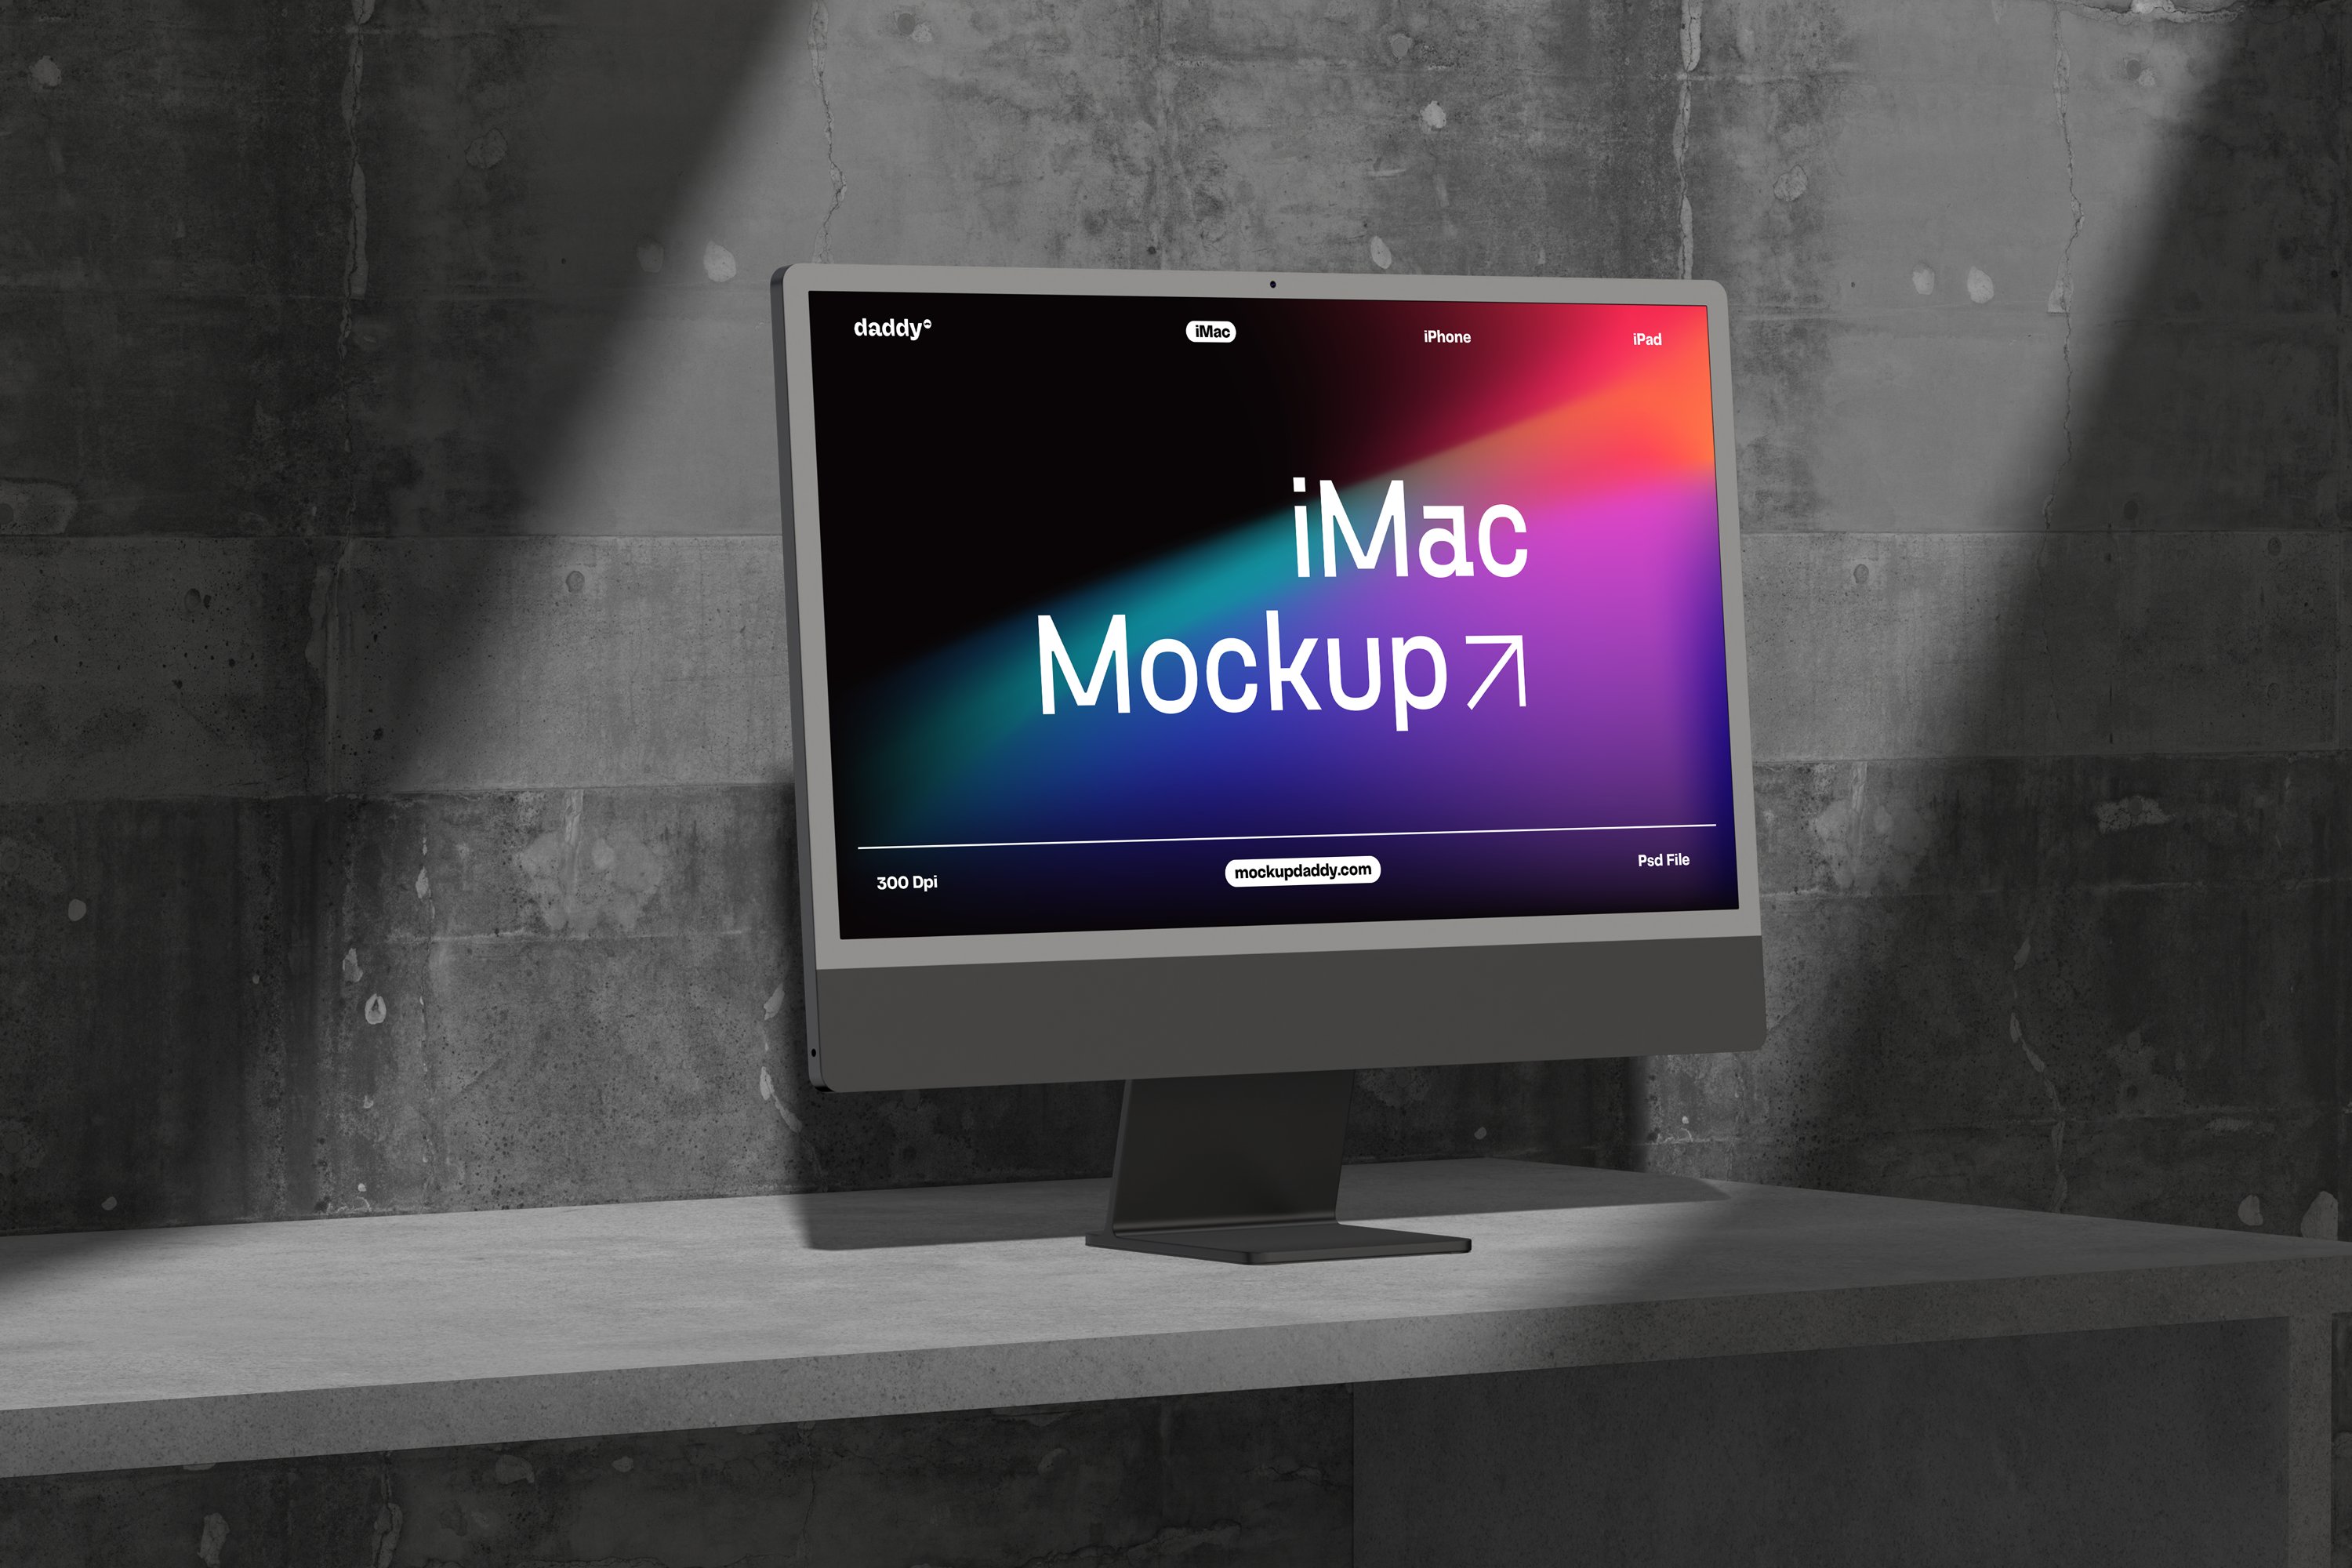 iMac Mockup Scene - 4 cover image.